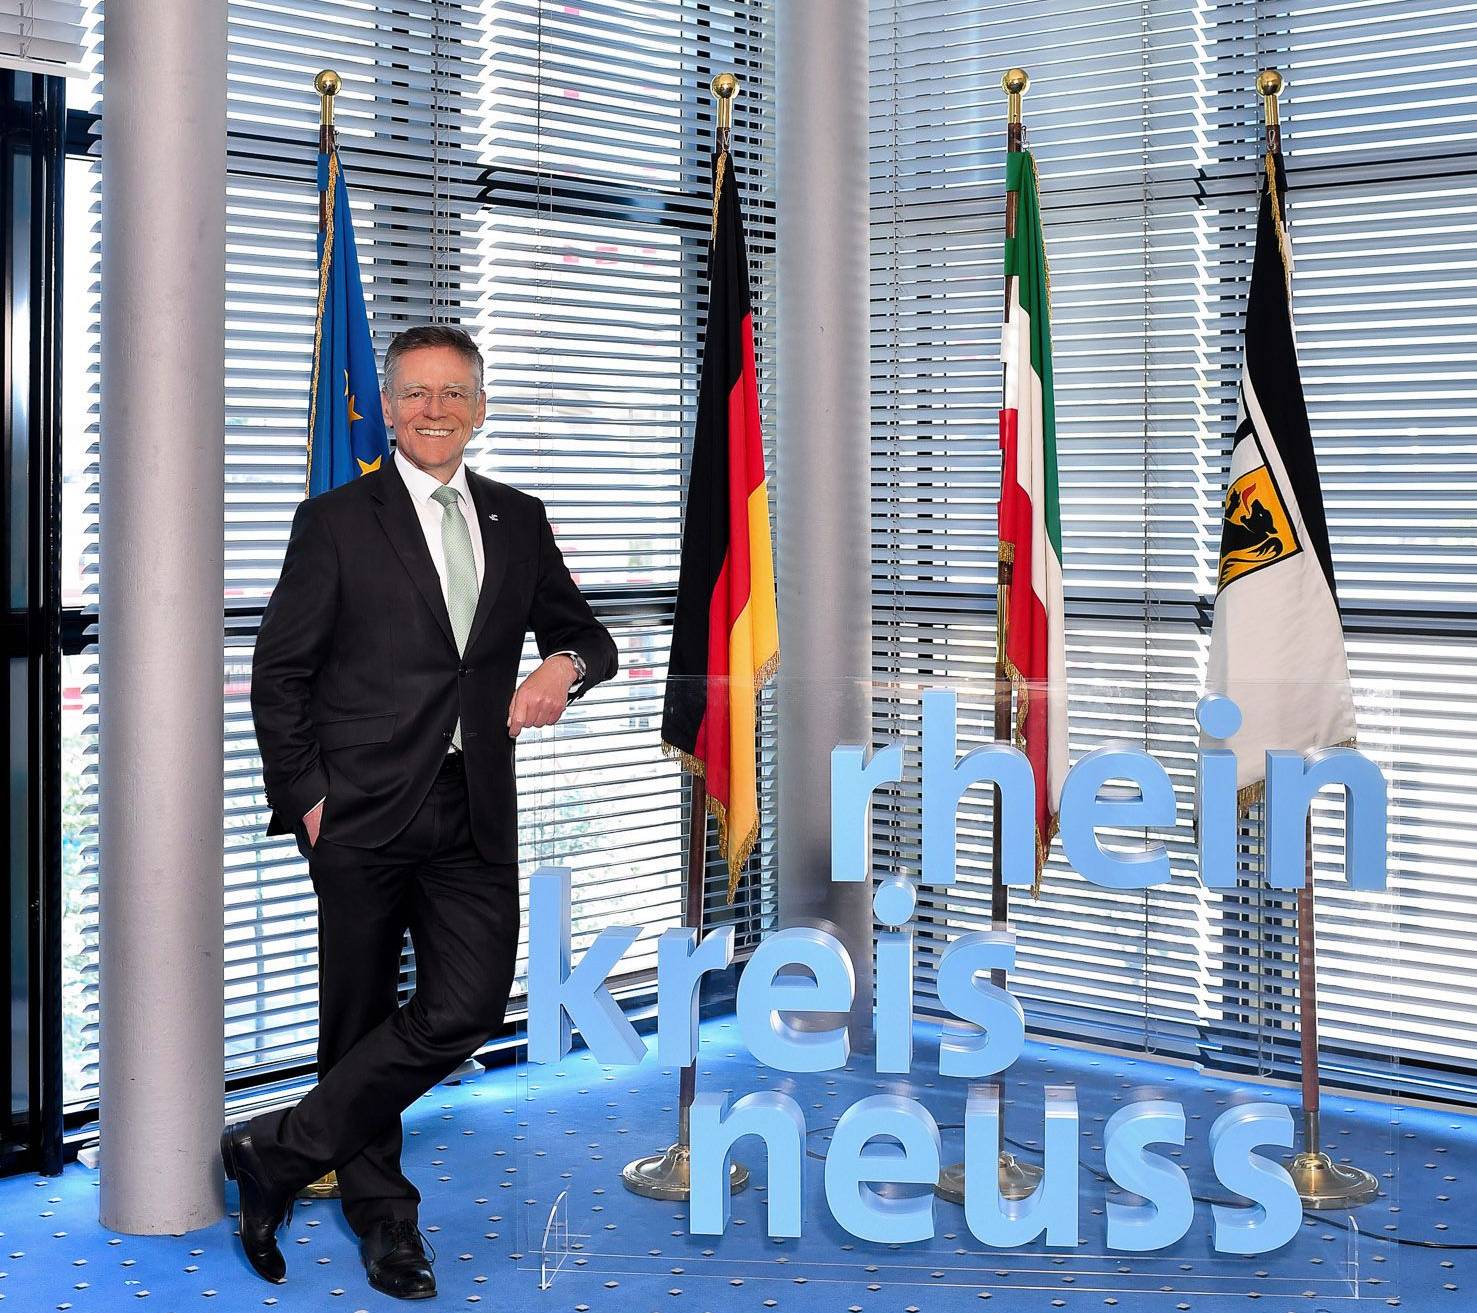  Landrat Hans-Jürgen Petrauschke freut sich über die positive Resonanz auf das STADRADELN 2020 und den ersten Platz des Rhein-Kreises Neuss unter den Kreisen bundesweit. 